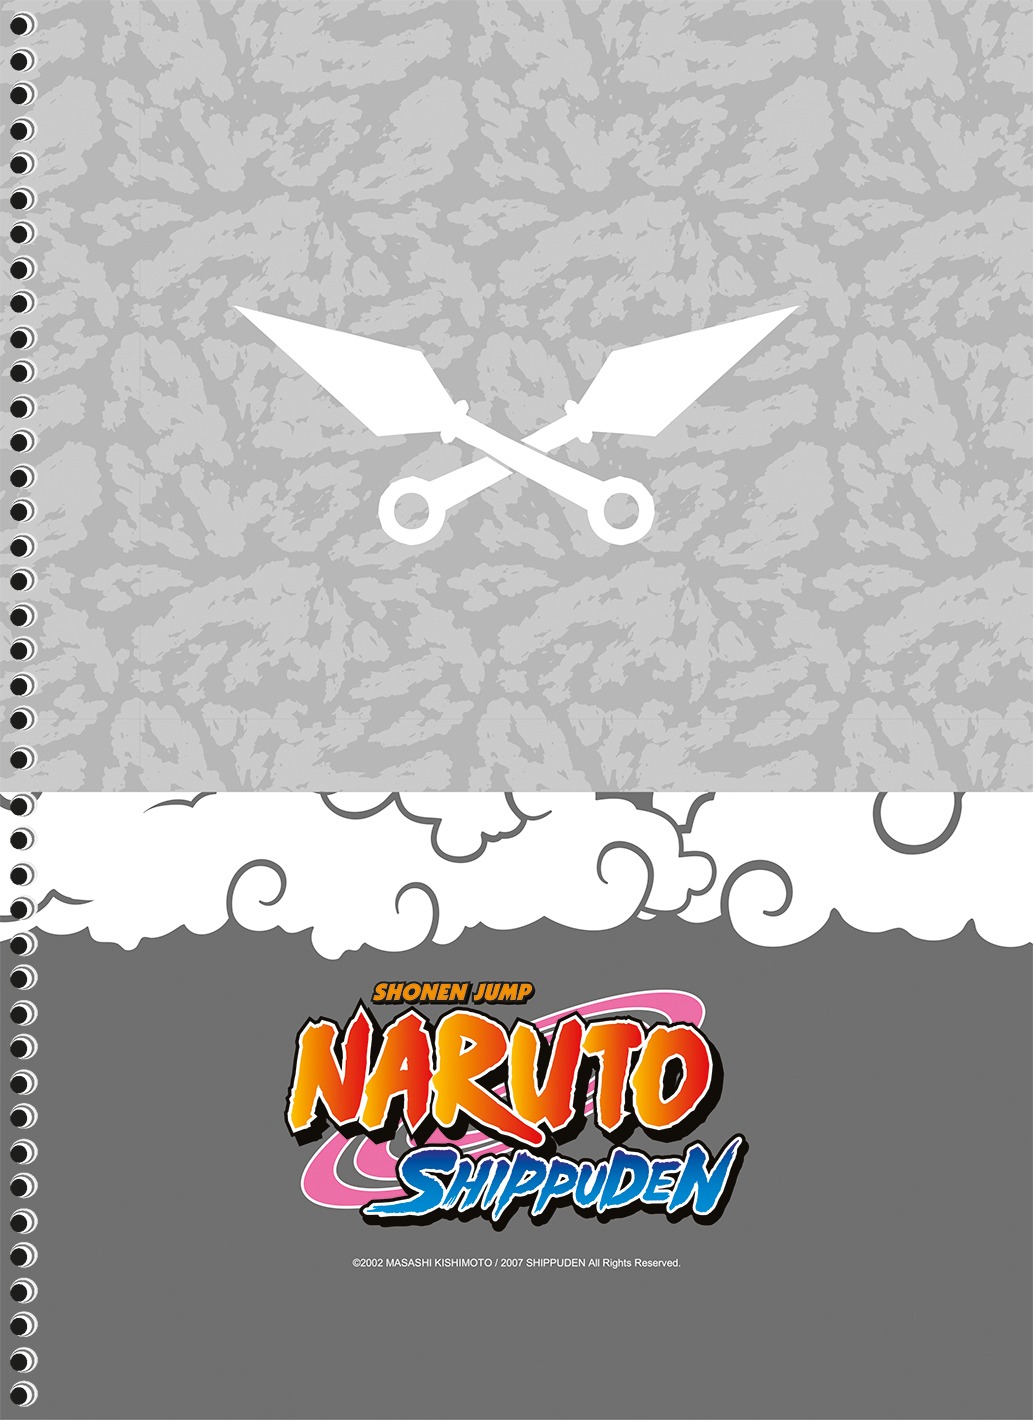 Caderno de Desenho- Naruto 02